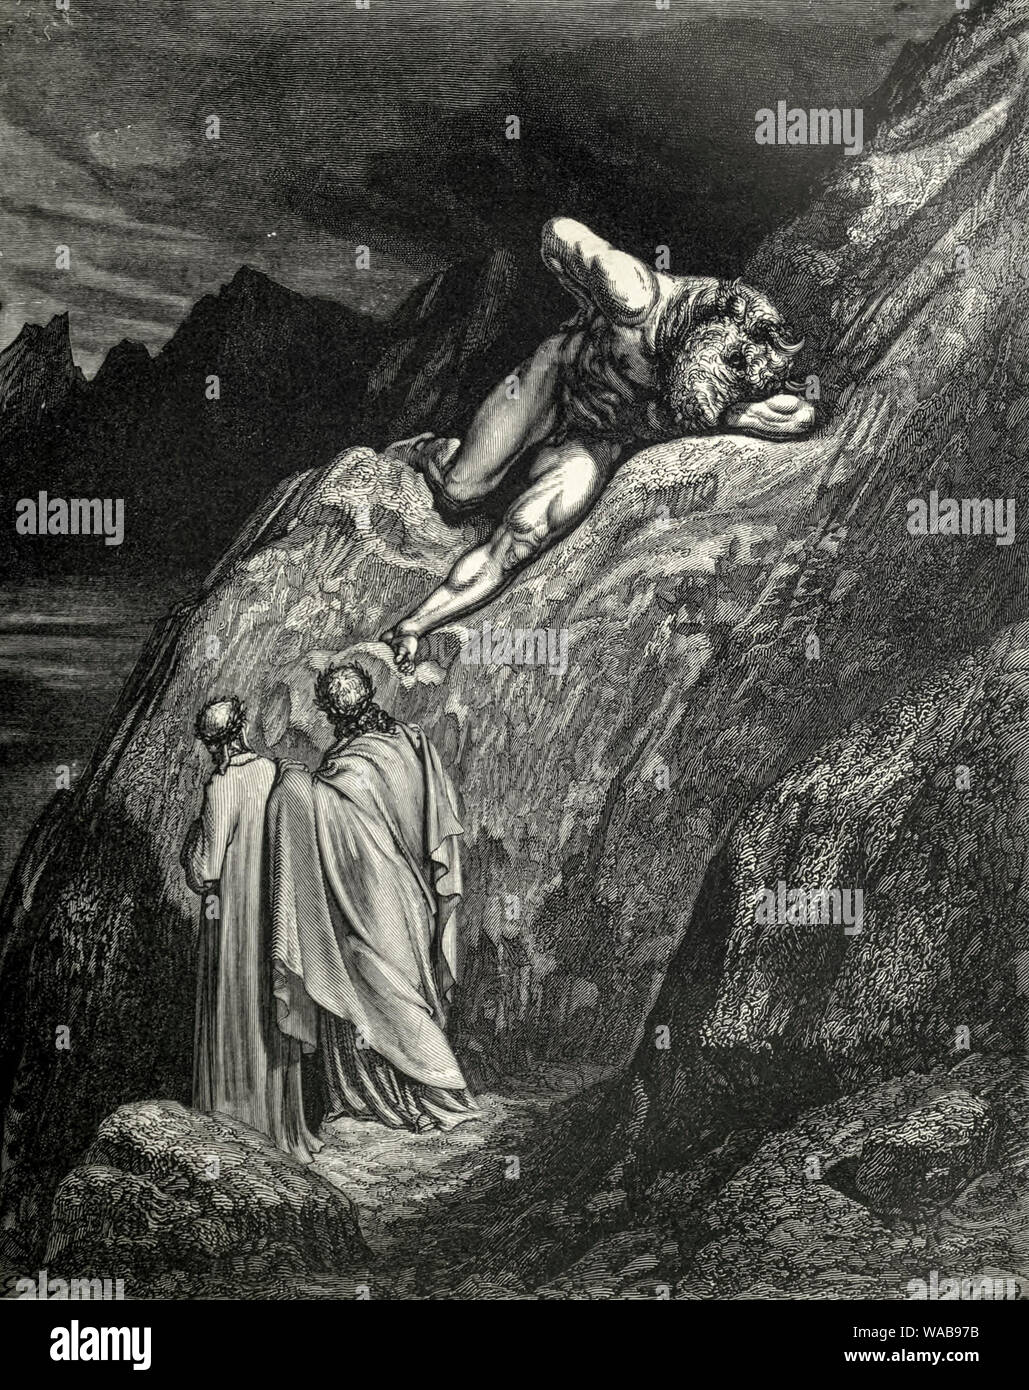 Gustave Doré il minotauro sulla roccia frantumata, incisione, 1866 Foto Stock